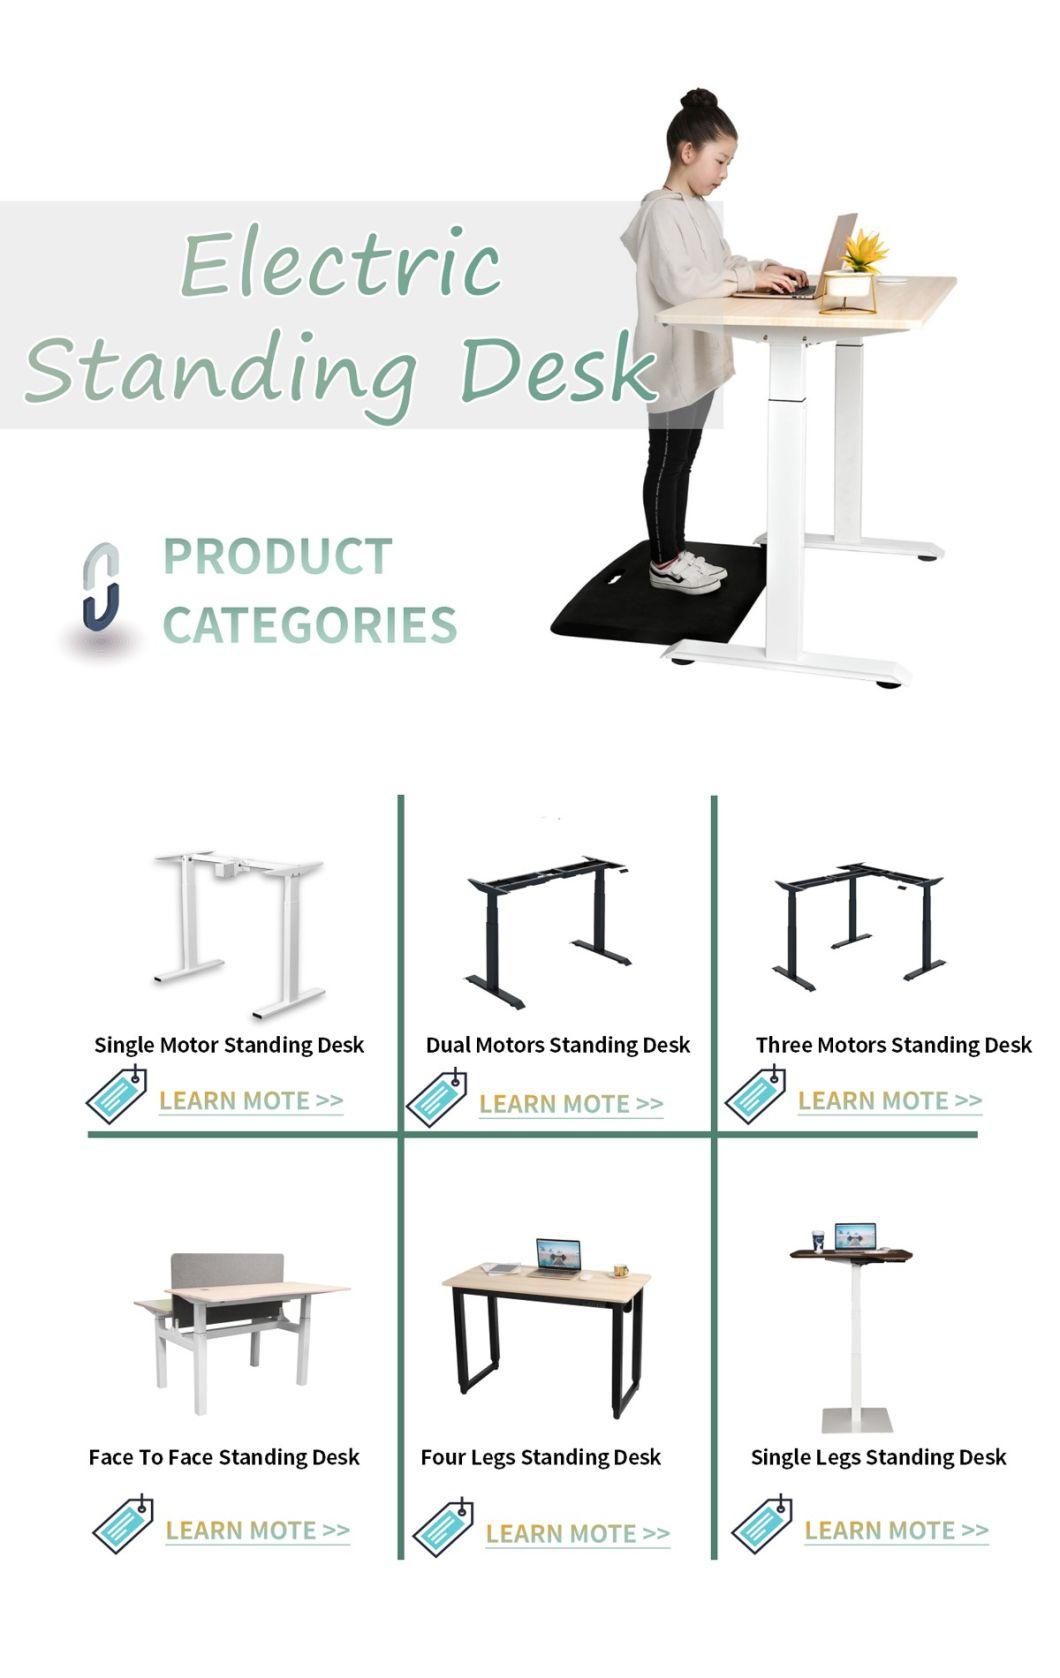 Manual Height Adjustable Black Color Table Frame Office Desk